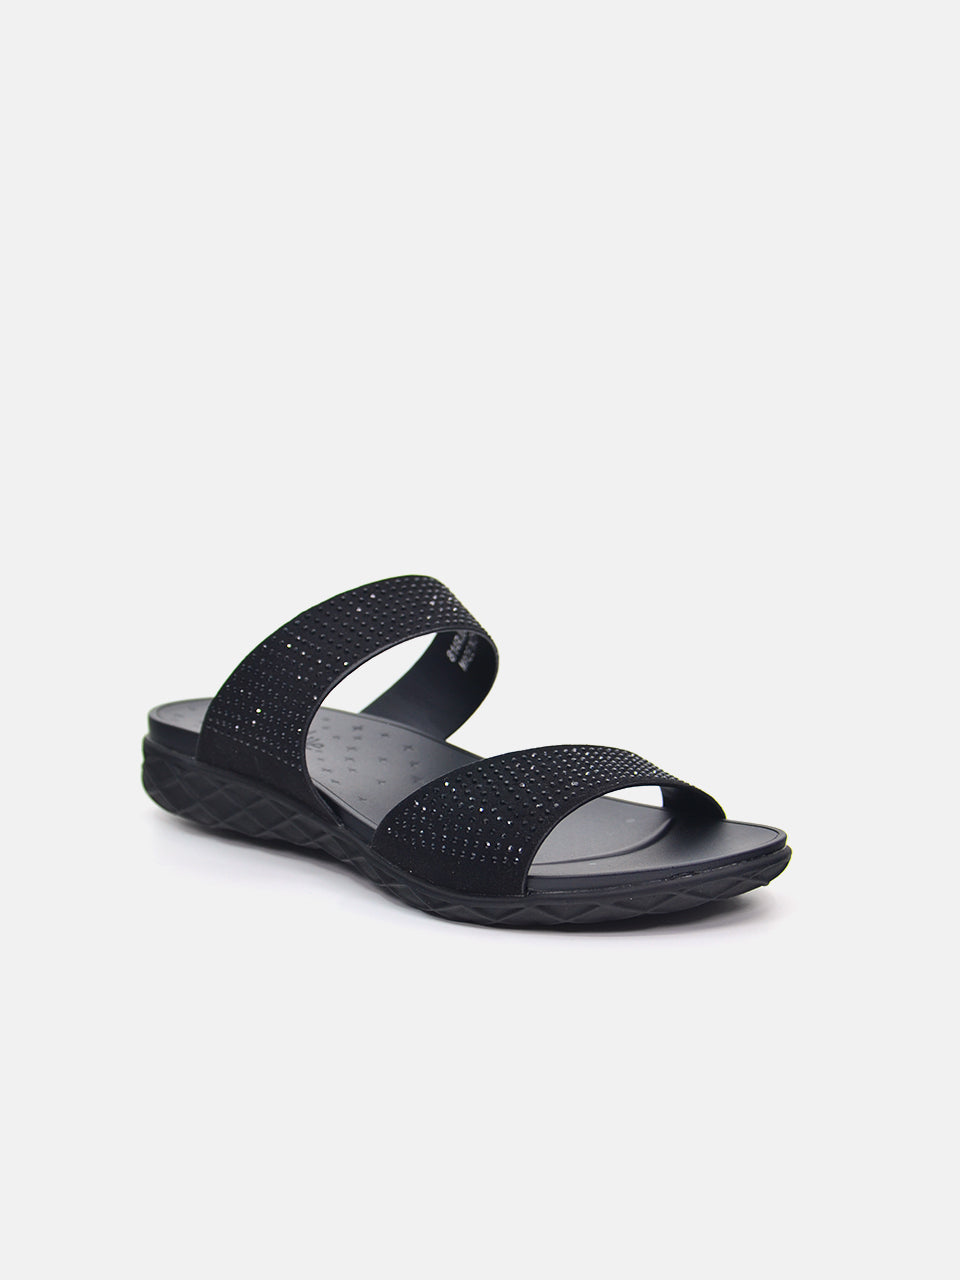 Michelle Morgan 814RJ082 Women's Flat Sandals #color_Black